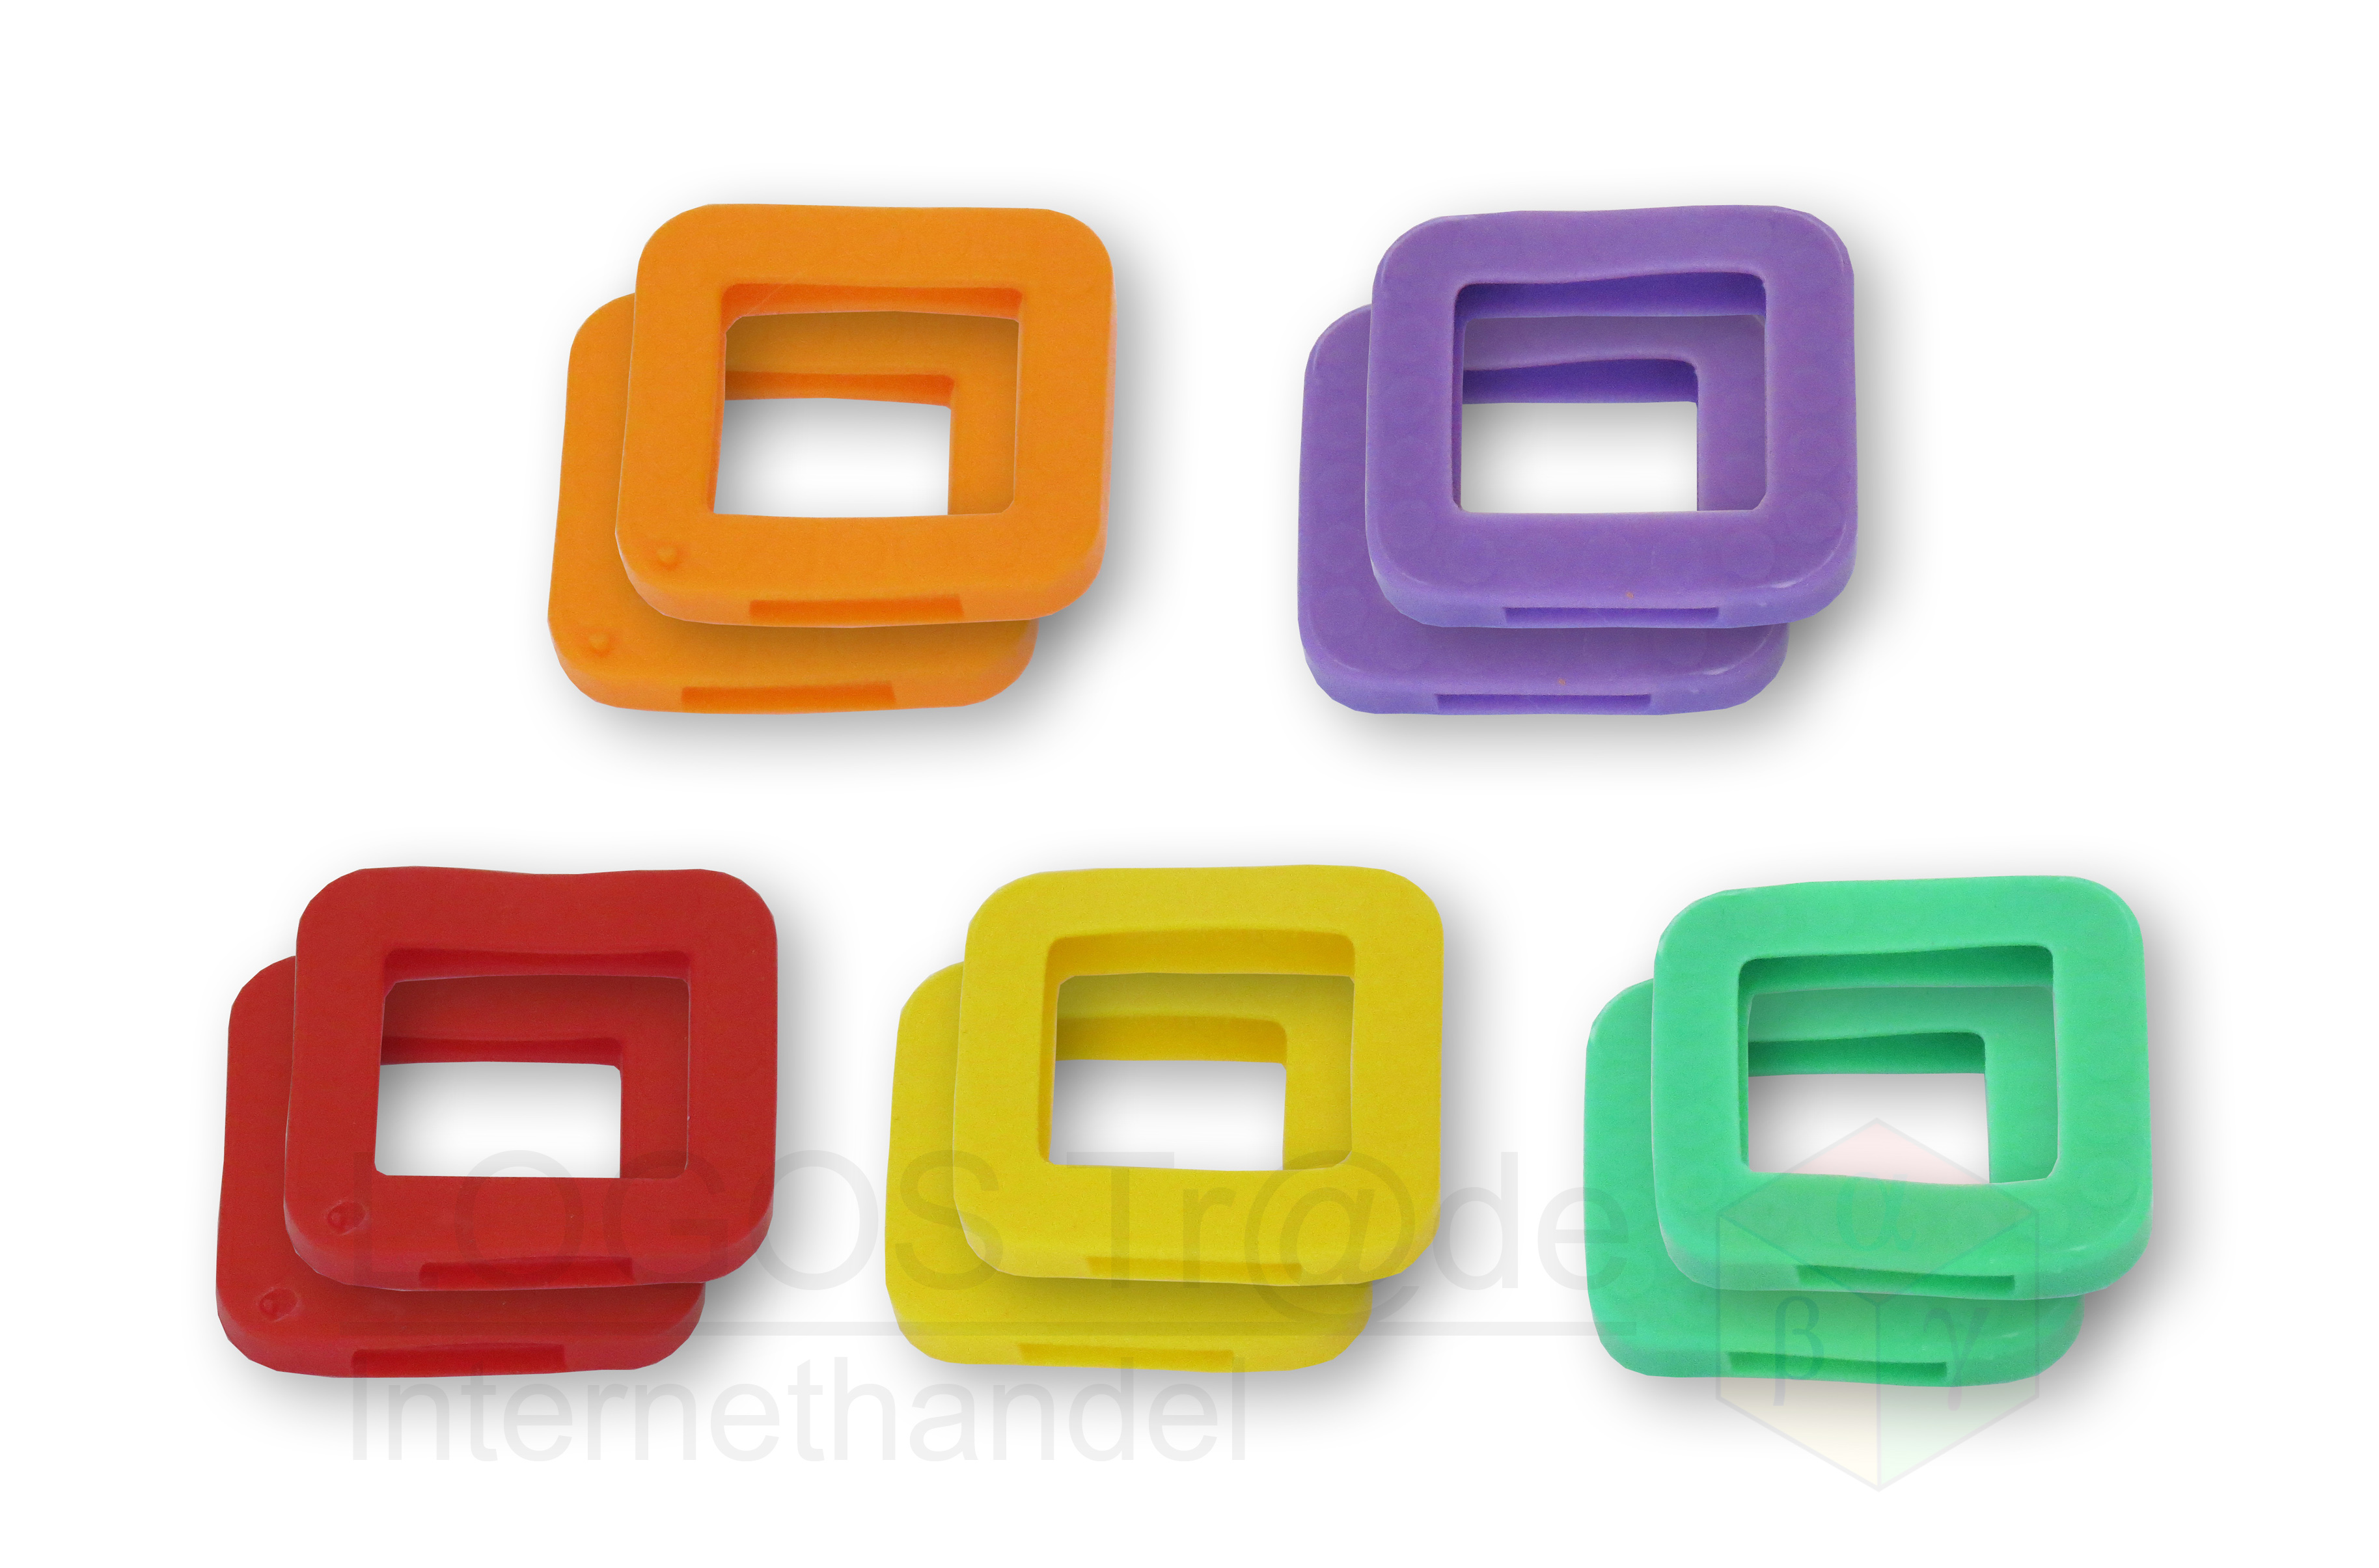 10 Schlüsselkennringe (eckig), ca. 25X23mm: 2 x orange, 2 x violett, 2 x rot, 2 x gelb, 2 x grün